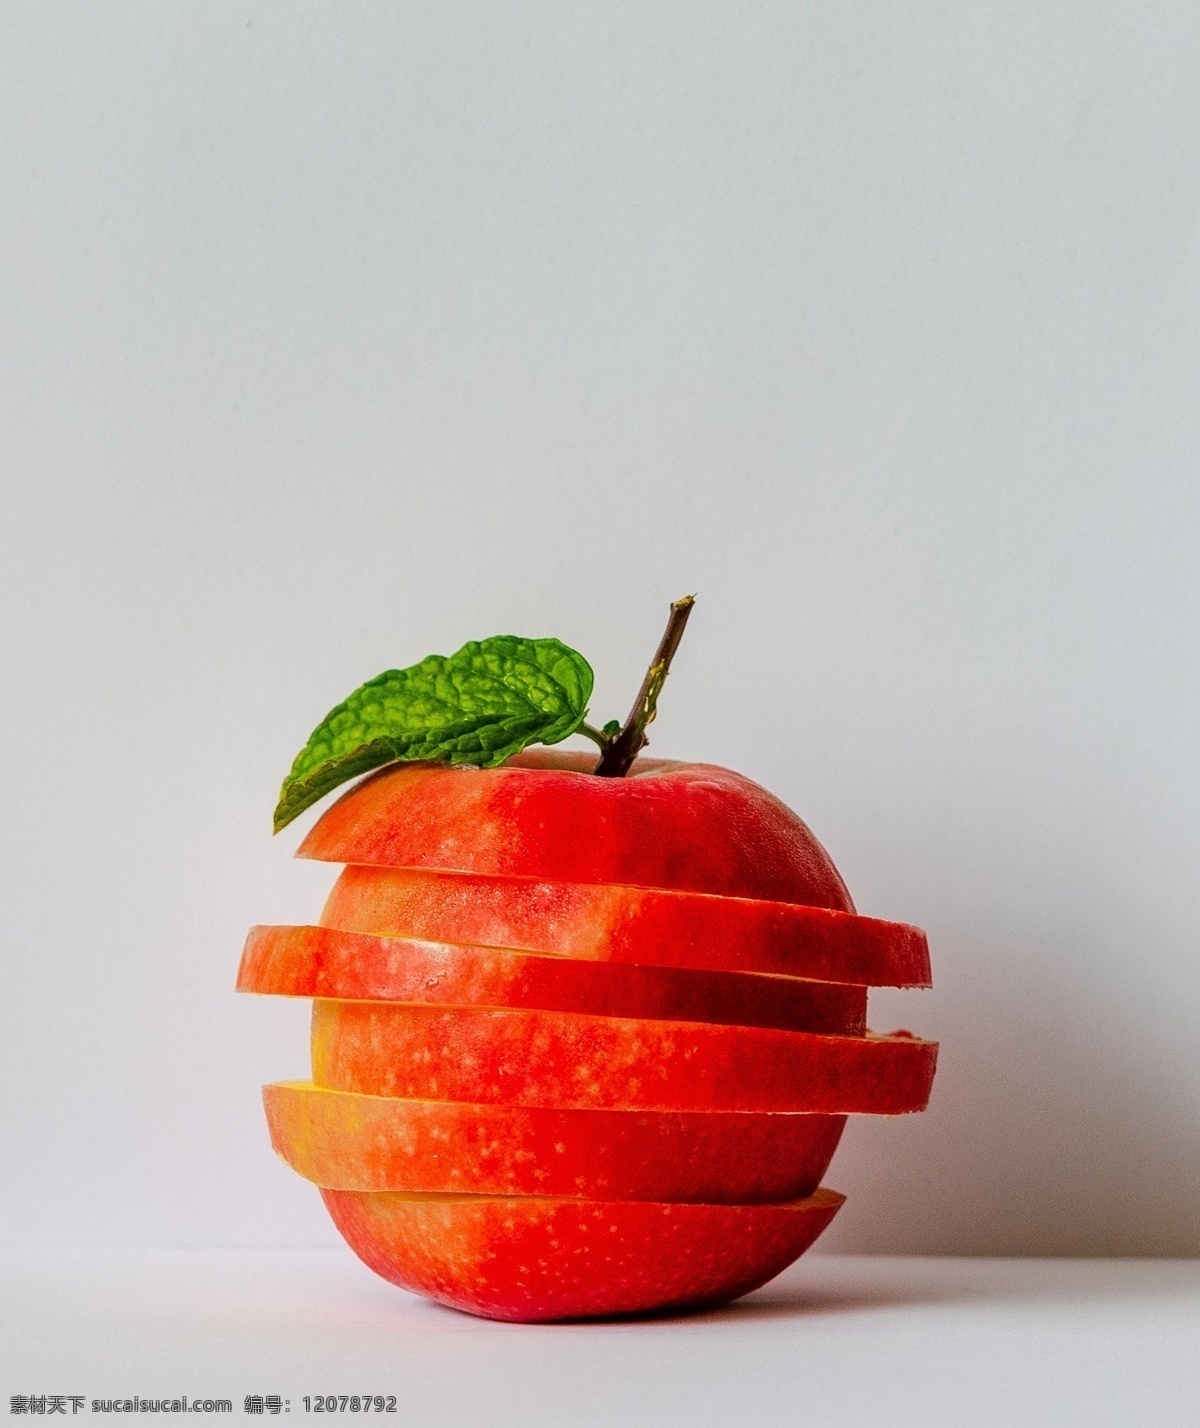 切开 分层 苹果 分层苹果 苹果背景 切开的苹果 水果 食物 食品 新鲜 水果背景 饮食 健康 绿色食品 生物世界 高清 tiff 桌面 高清壁纸 壁纸 拍摄 摆拍 高清摄影 水果摄影 美食摄影